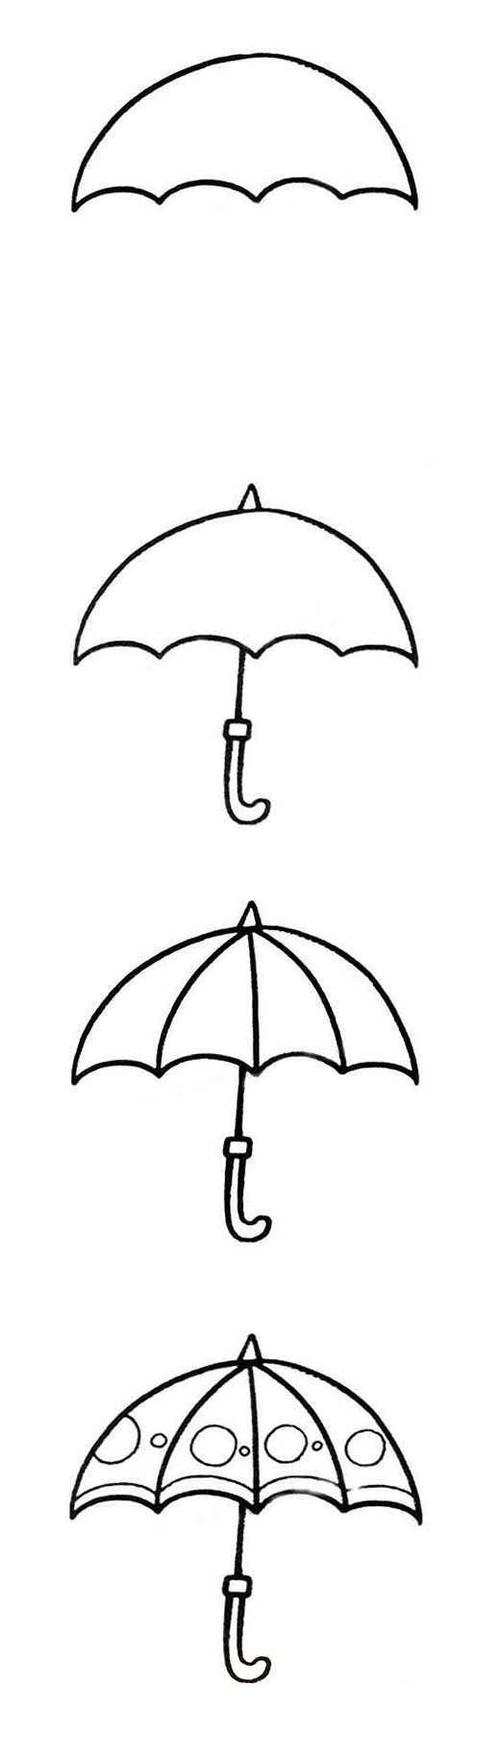 彩色小雨伞简笔画画法图片步骤